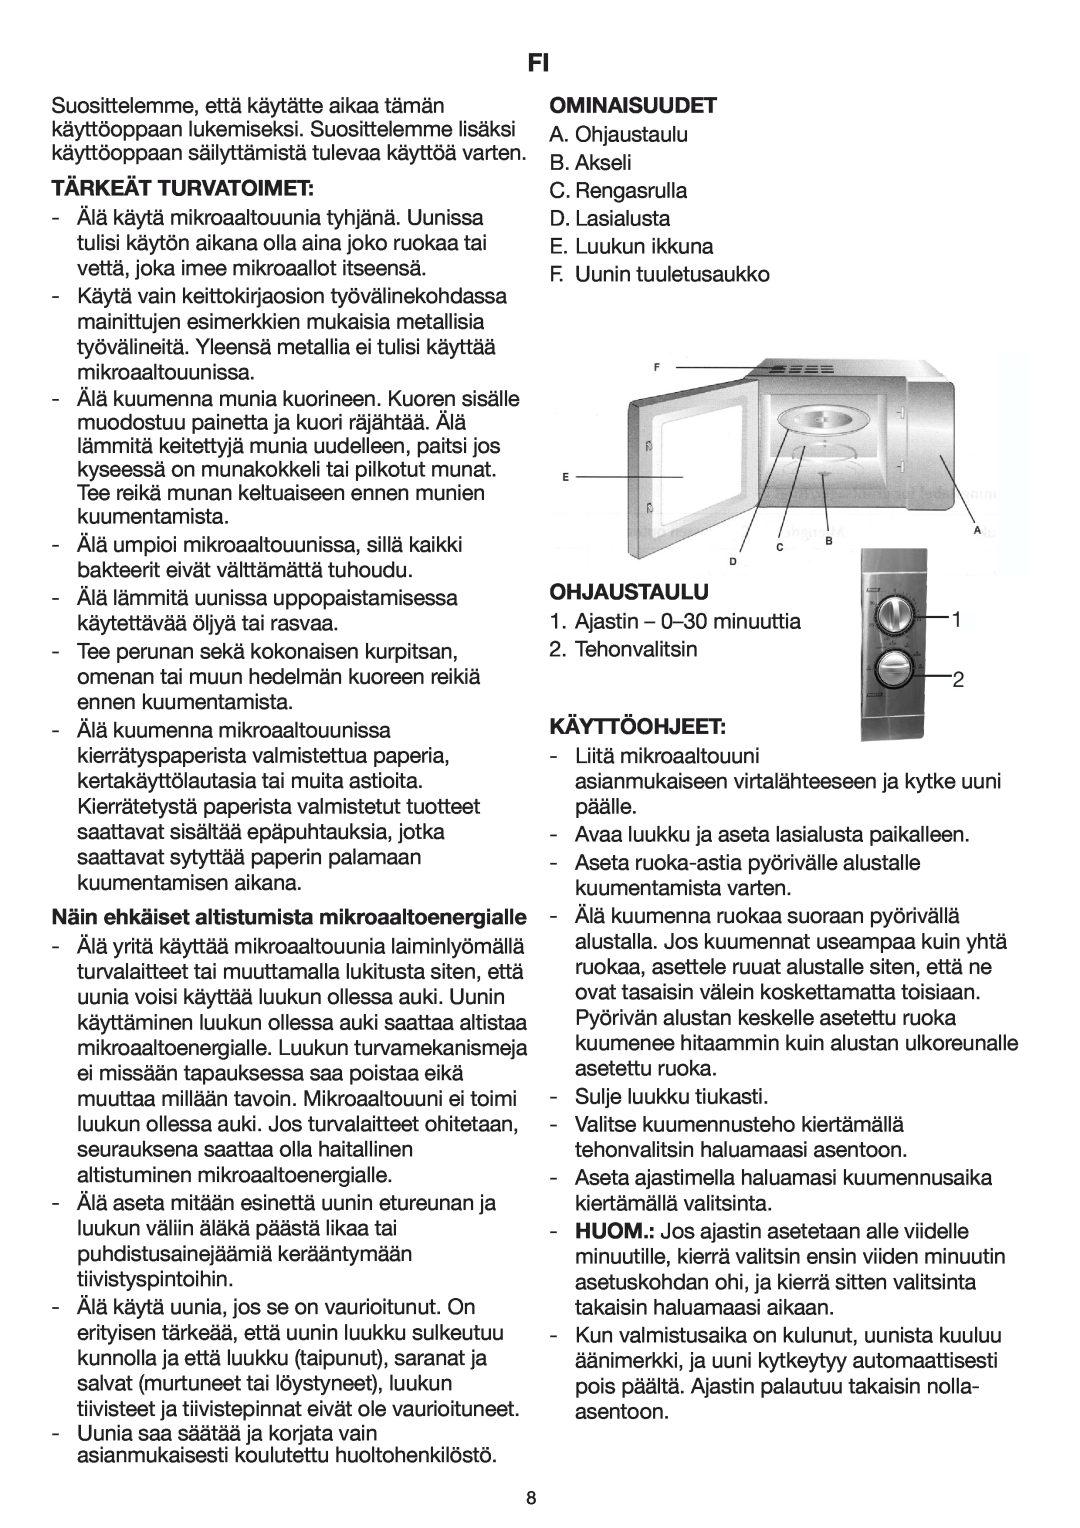 Melissa 253-002 manual Tärkeät Turvatoimet, Näin ehkäiset altistumista mikroaaltoenergialle, Ominaisuudet, Ohjaustaulu 